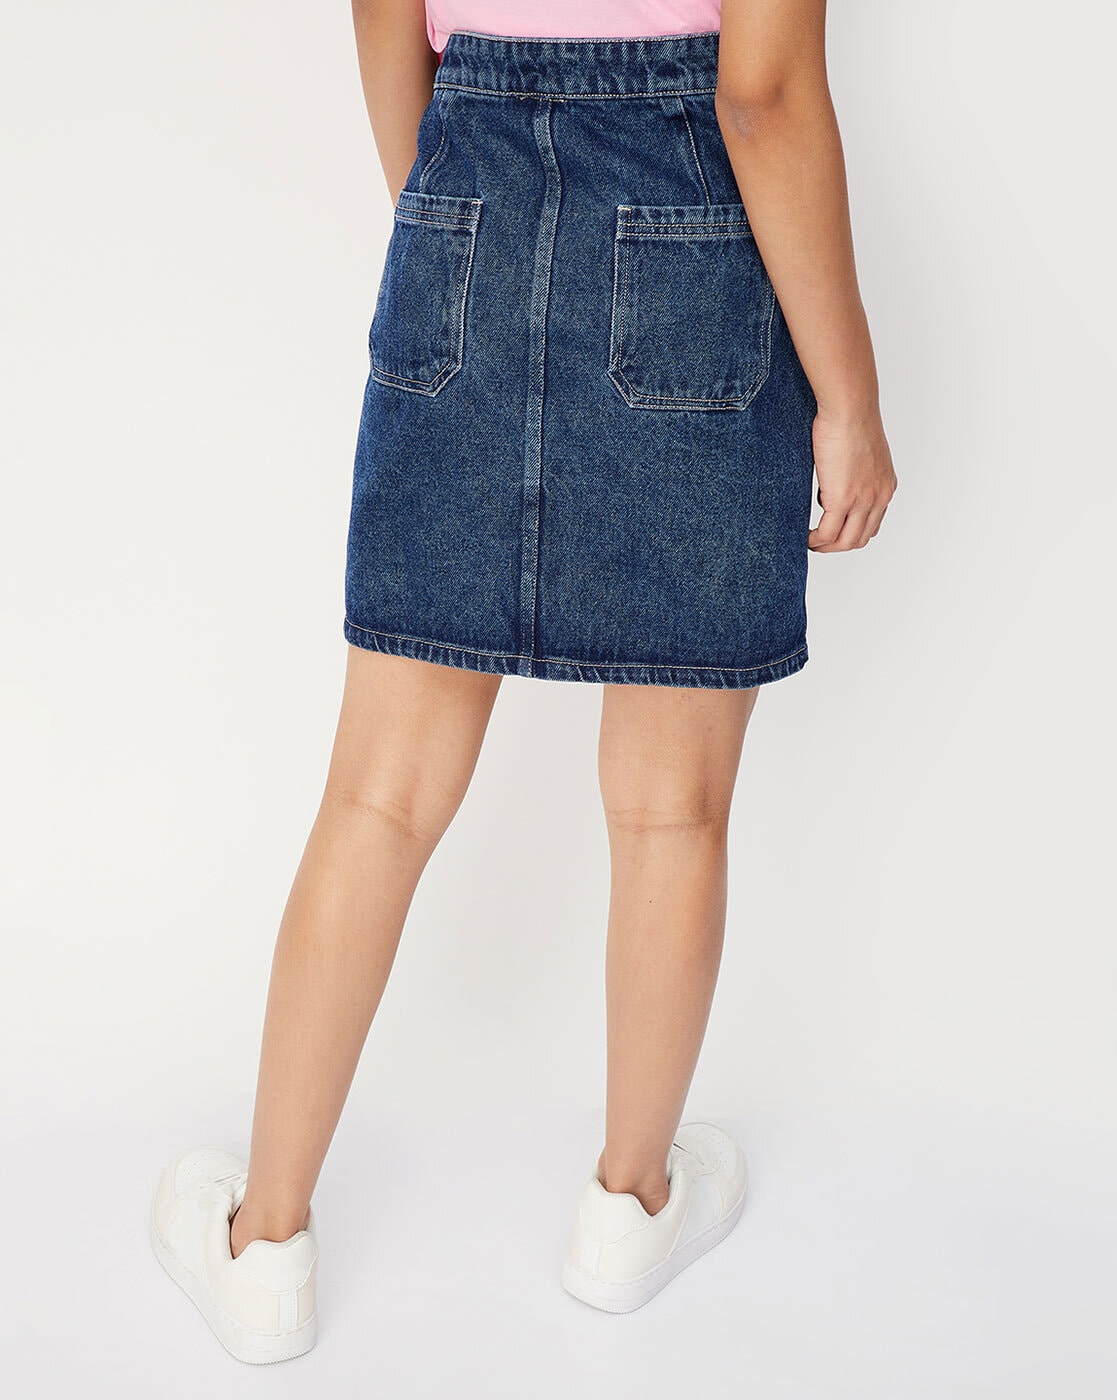 Vintage 90's Gasoline Dark Wash Side Zip Denim Jean Skirt Size 9/10 - Etsy